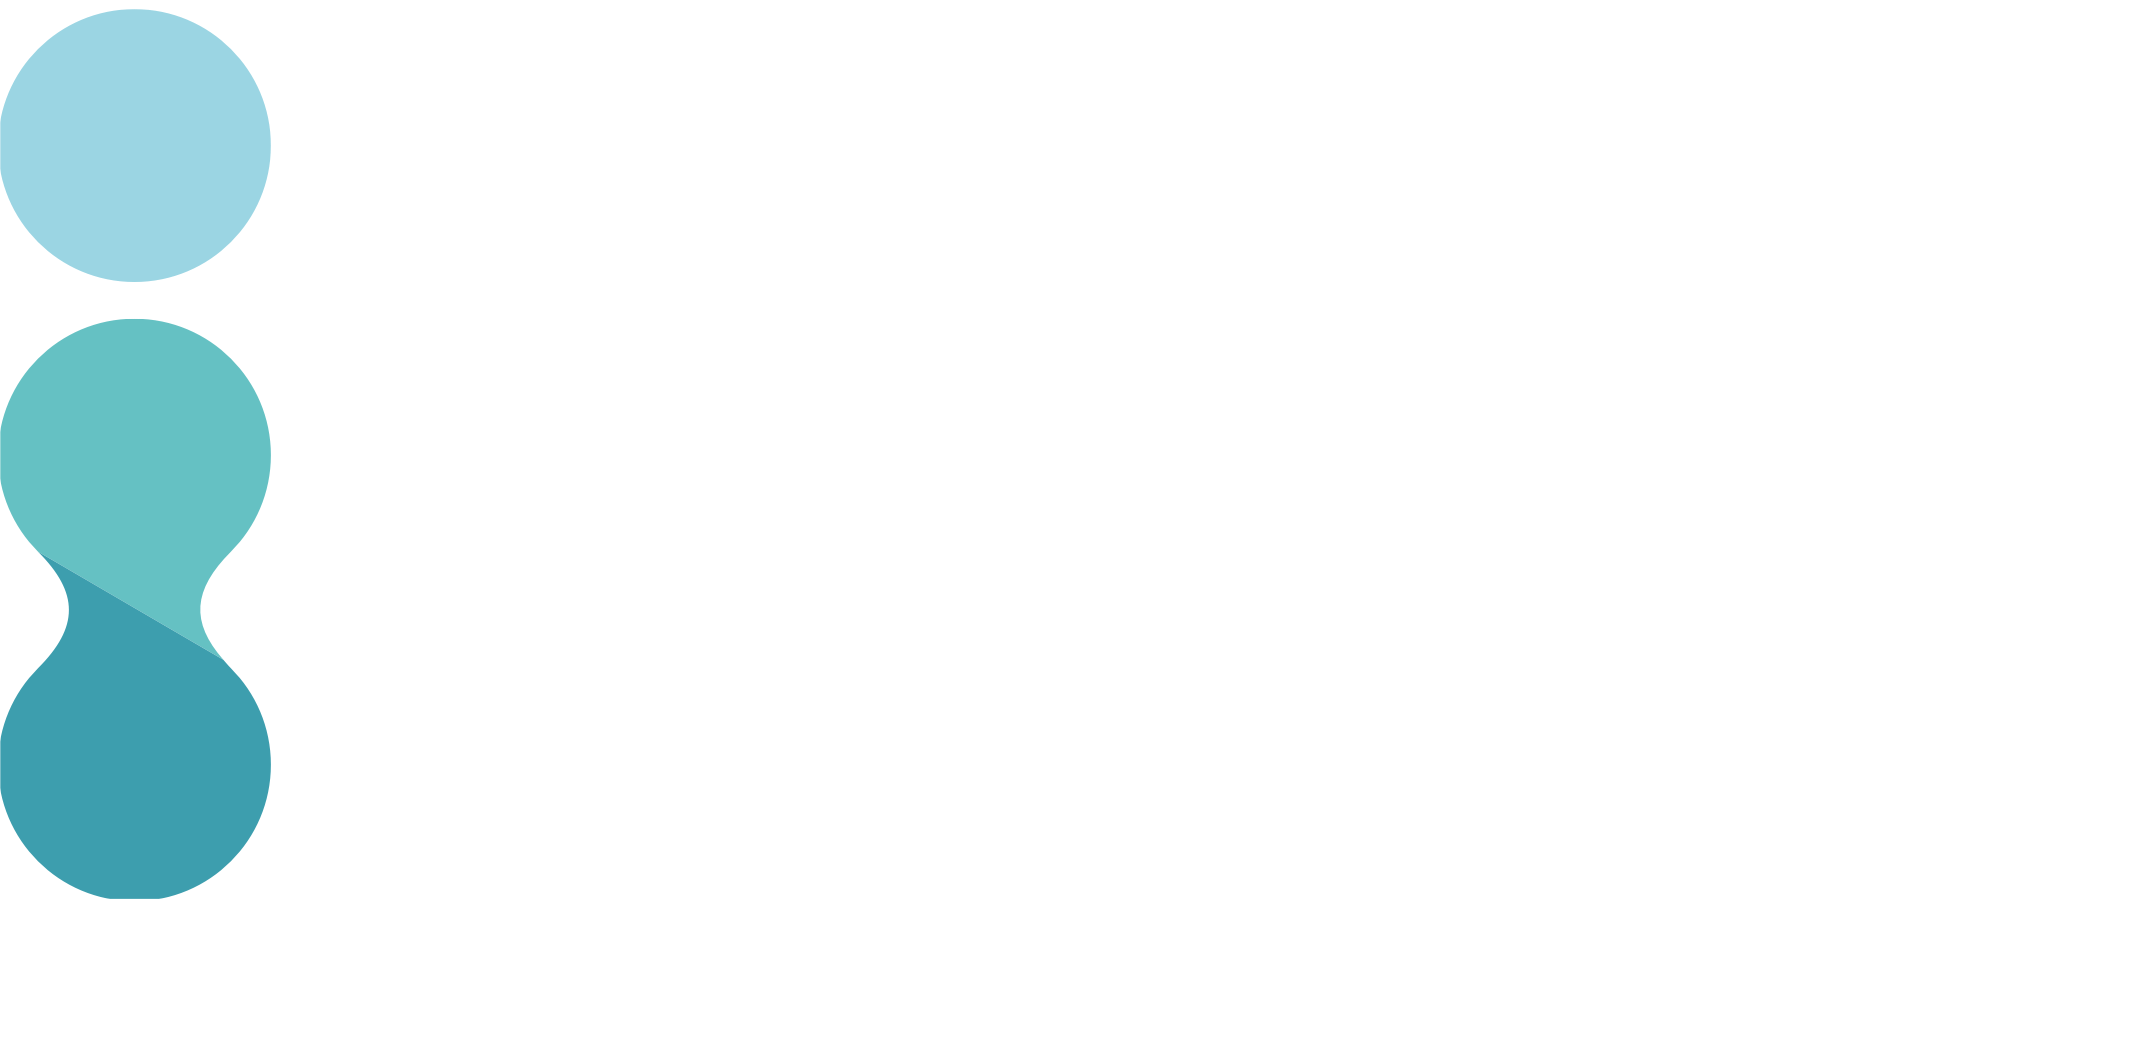 Flower Funding